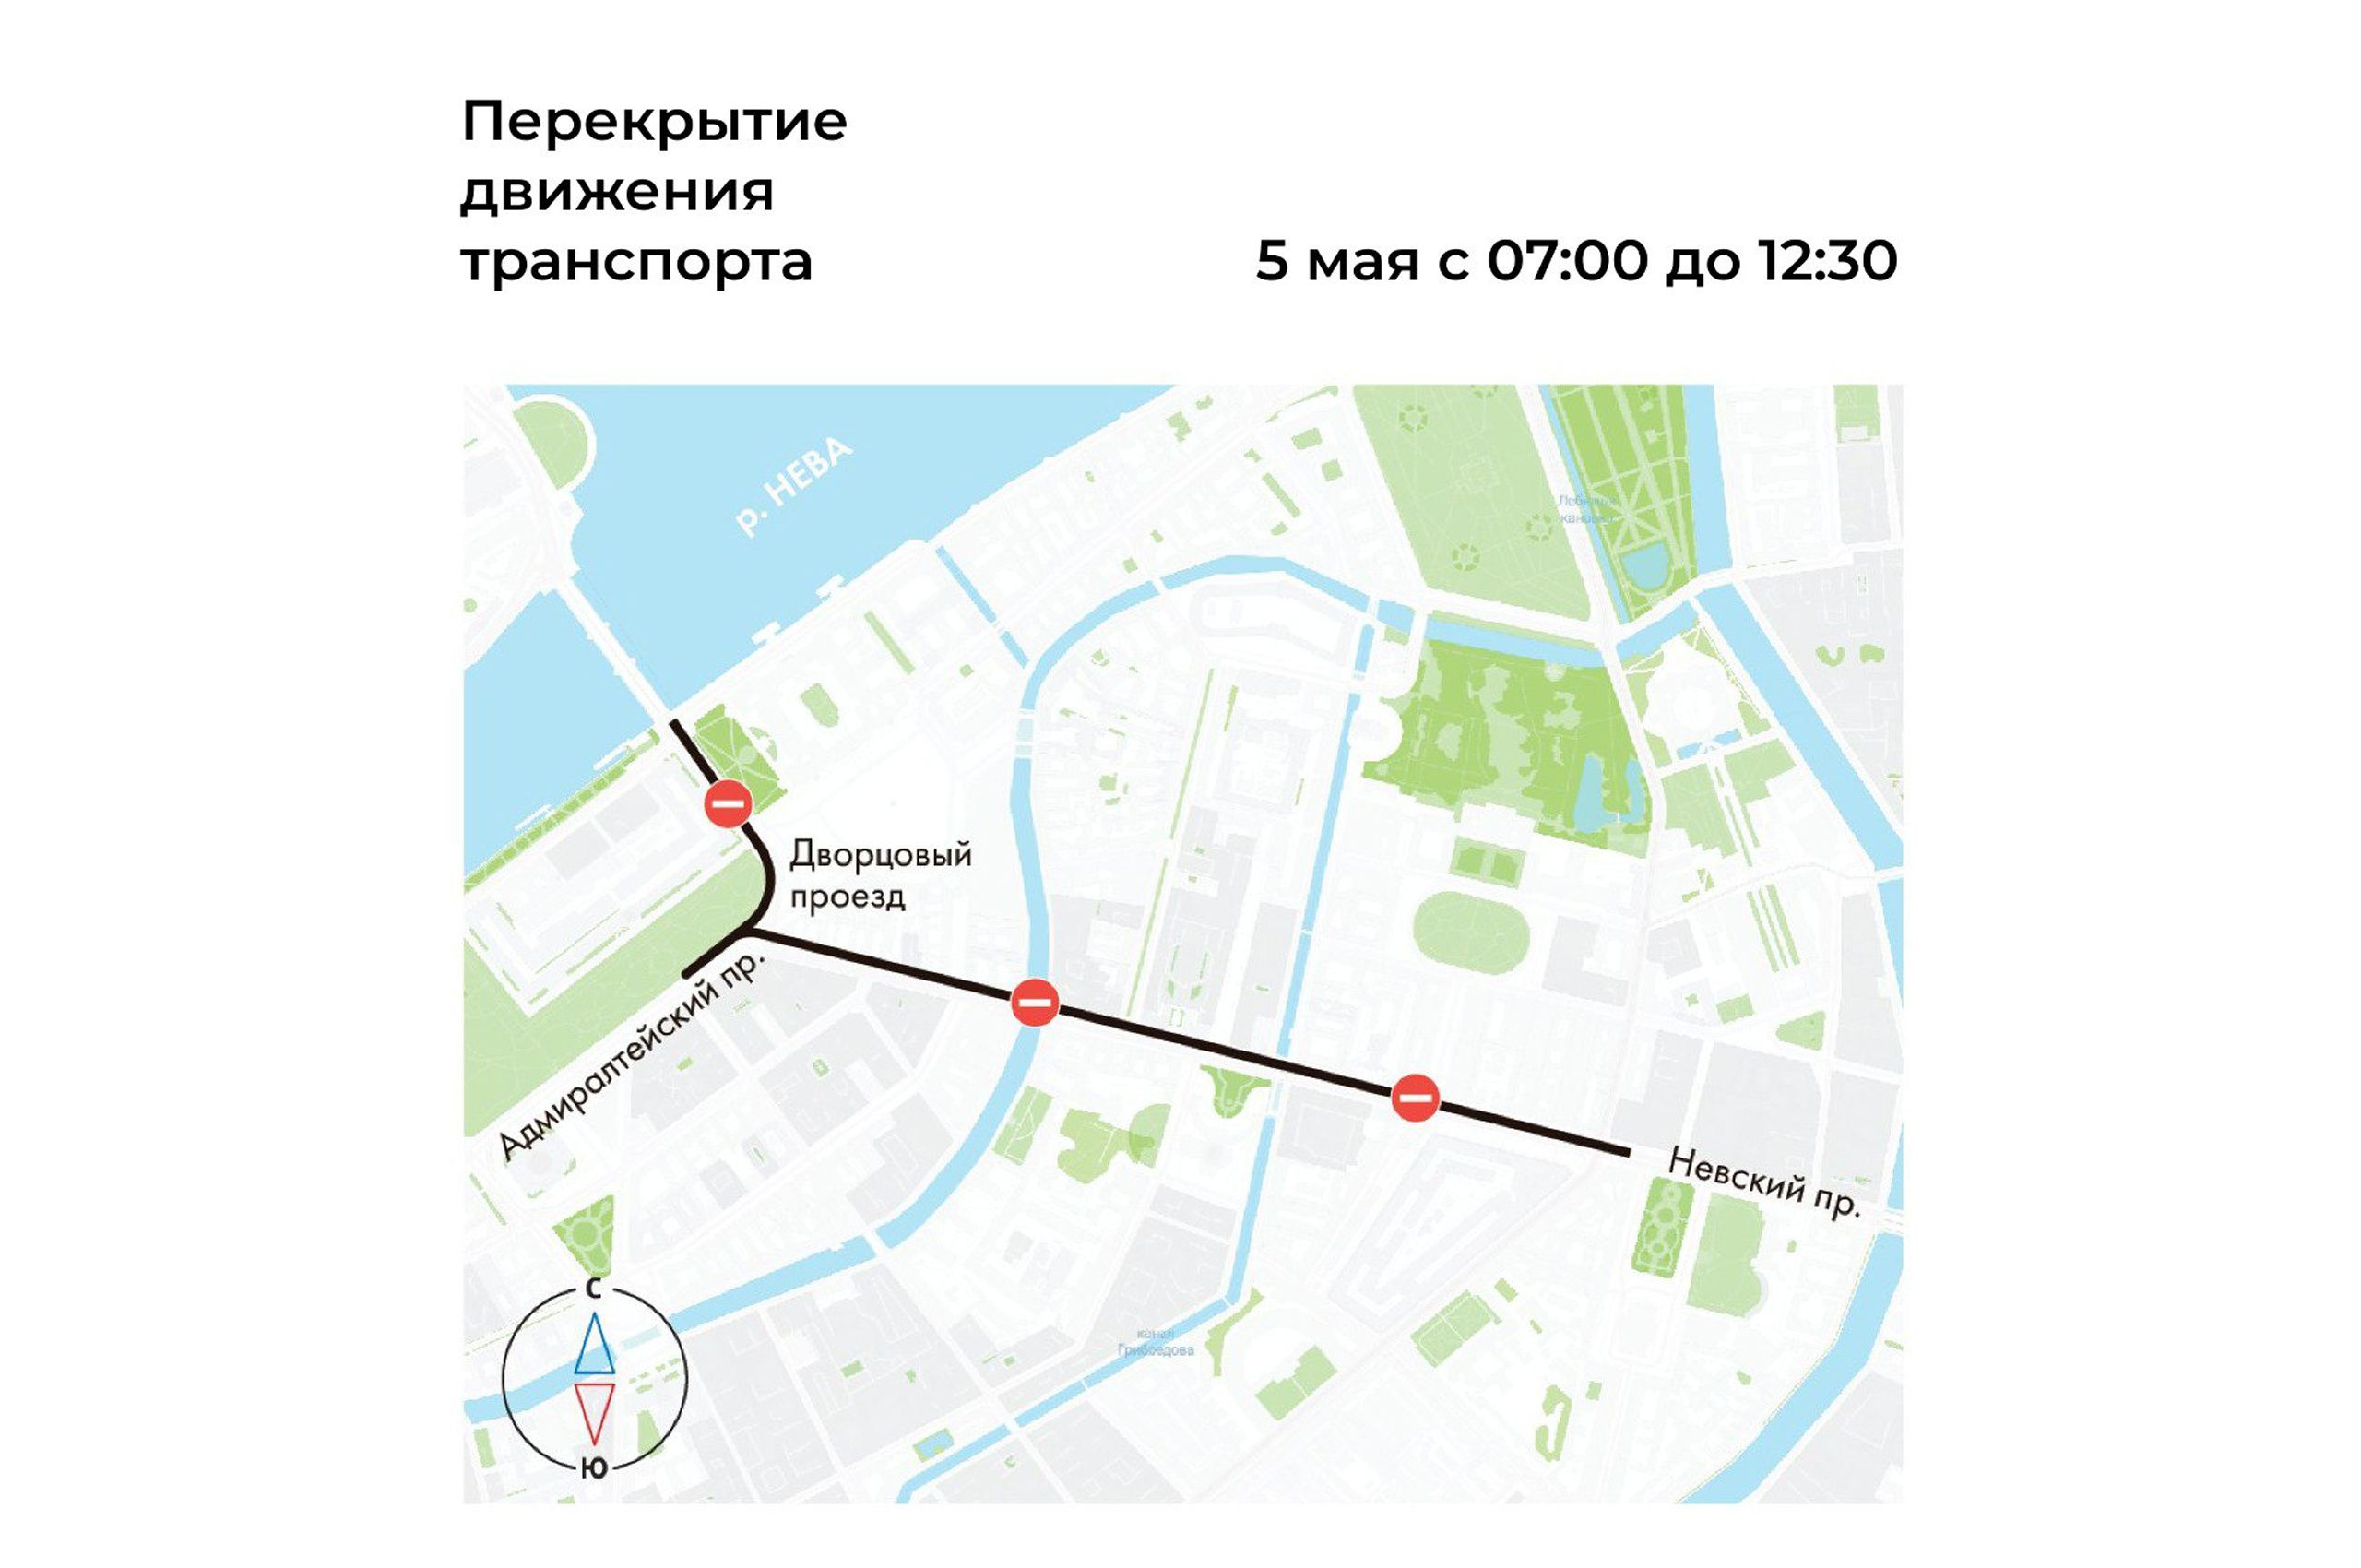 В Санкт-Петербурге с 29 апреля введены временные ограничения в движении транспорта